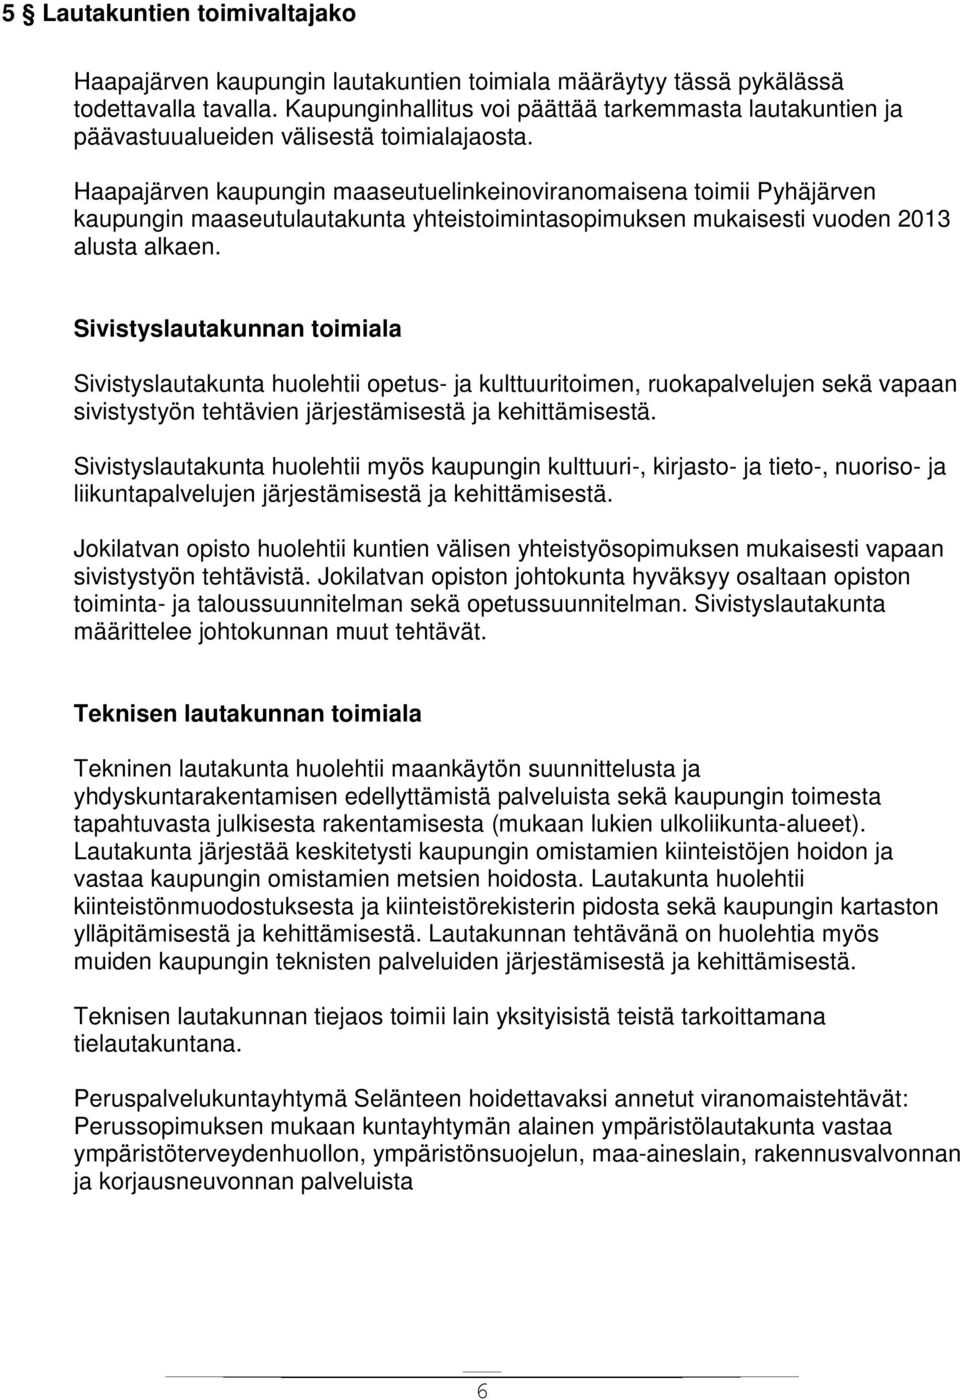 Haapajärven kaupungin maaseutuelinkeinoviranomaisena toimii Pyhäjärven kaupungin maaseutulautakunta yhteistoimintasopimuksen mukaisesti vuoden 2013 alusta alkaen.